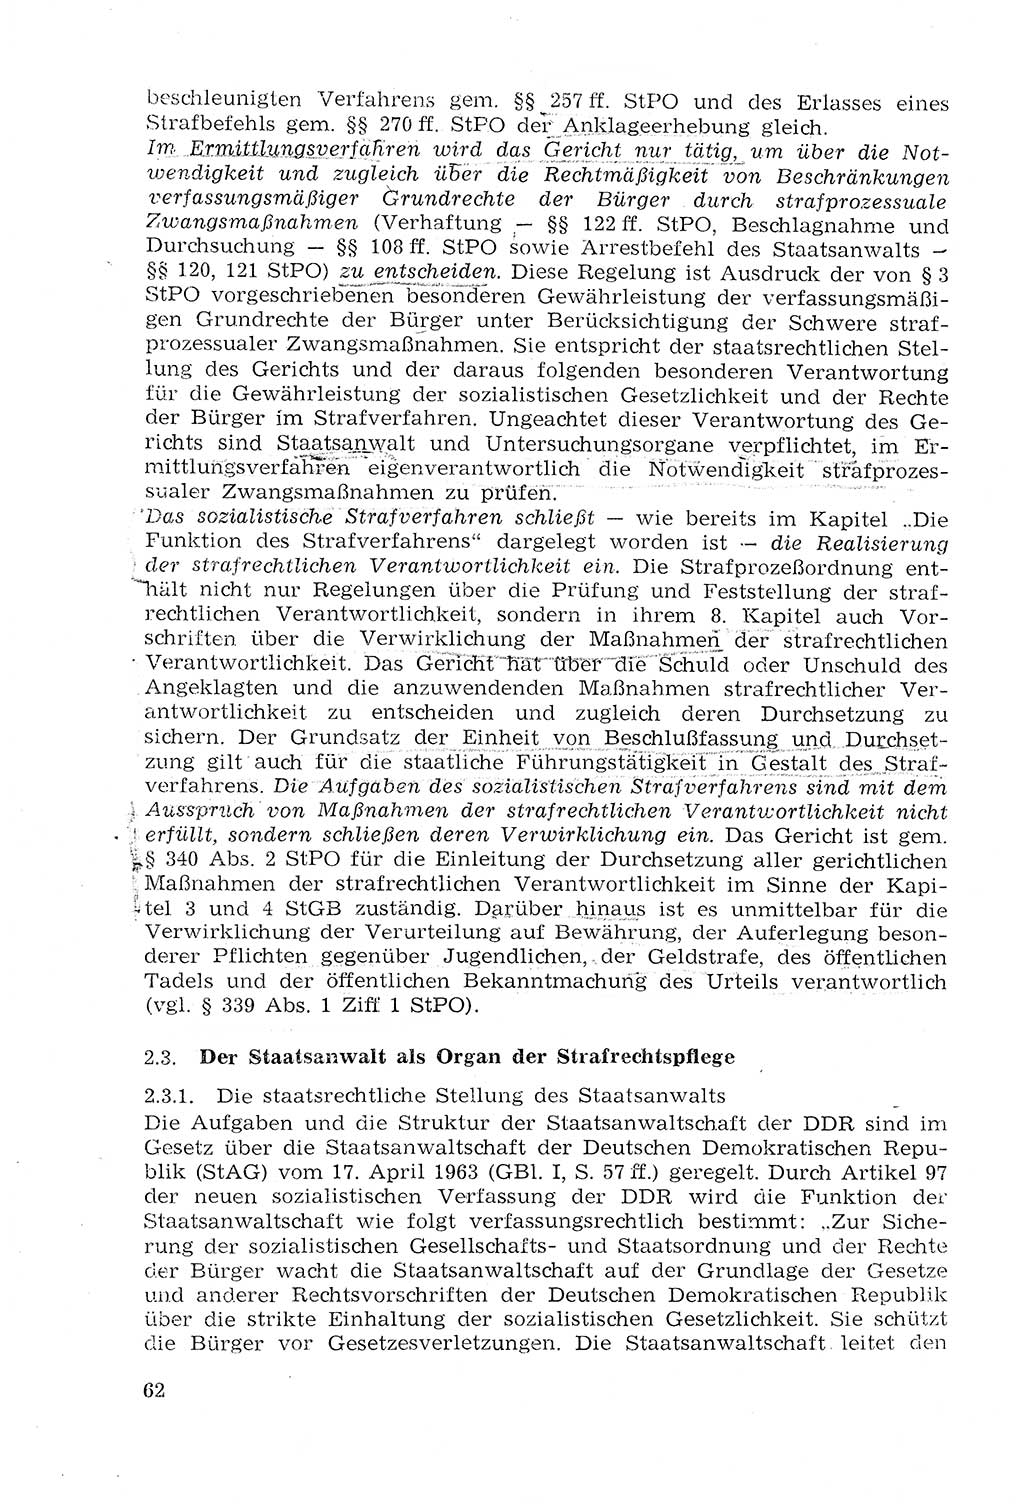 Strafprozeßrecht der DDR (Deutsche Demokratische Republik), Lehrmaterial 1969, Seite 62 (Strafprozeßr. DDR Lehrmat. 1969, S. 62)